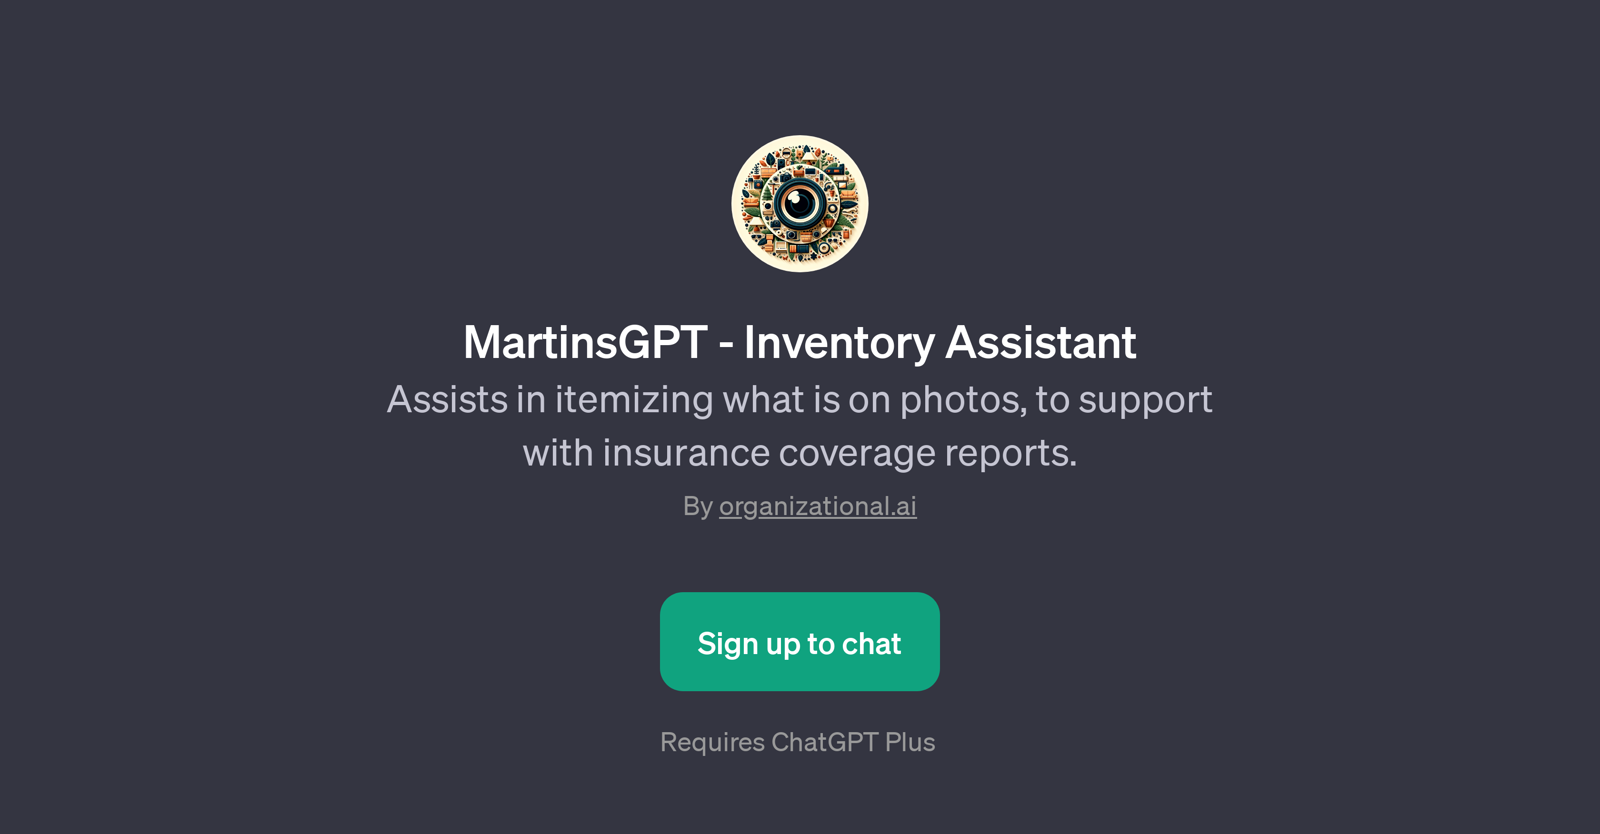 MartinsGPT - Inventory Assistant website